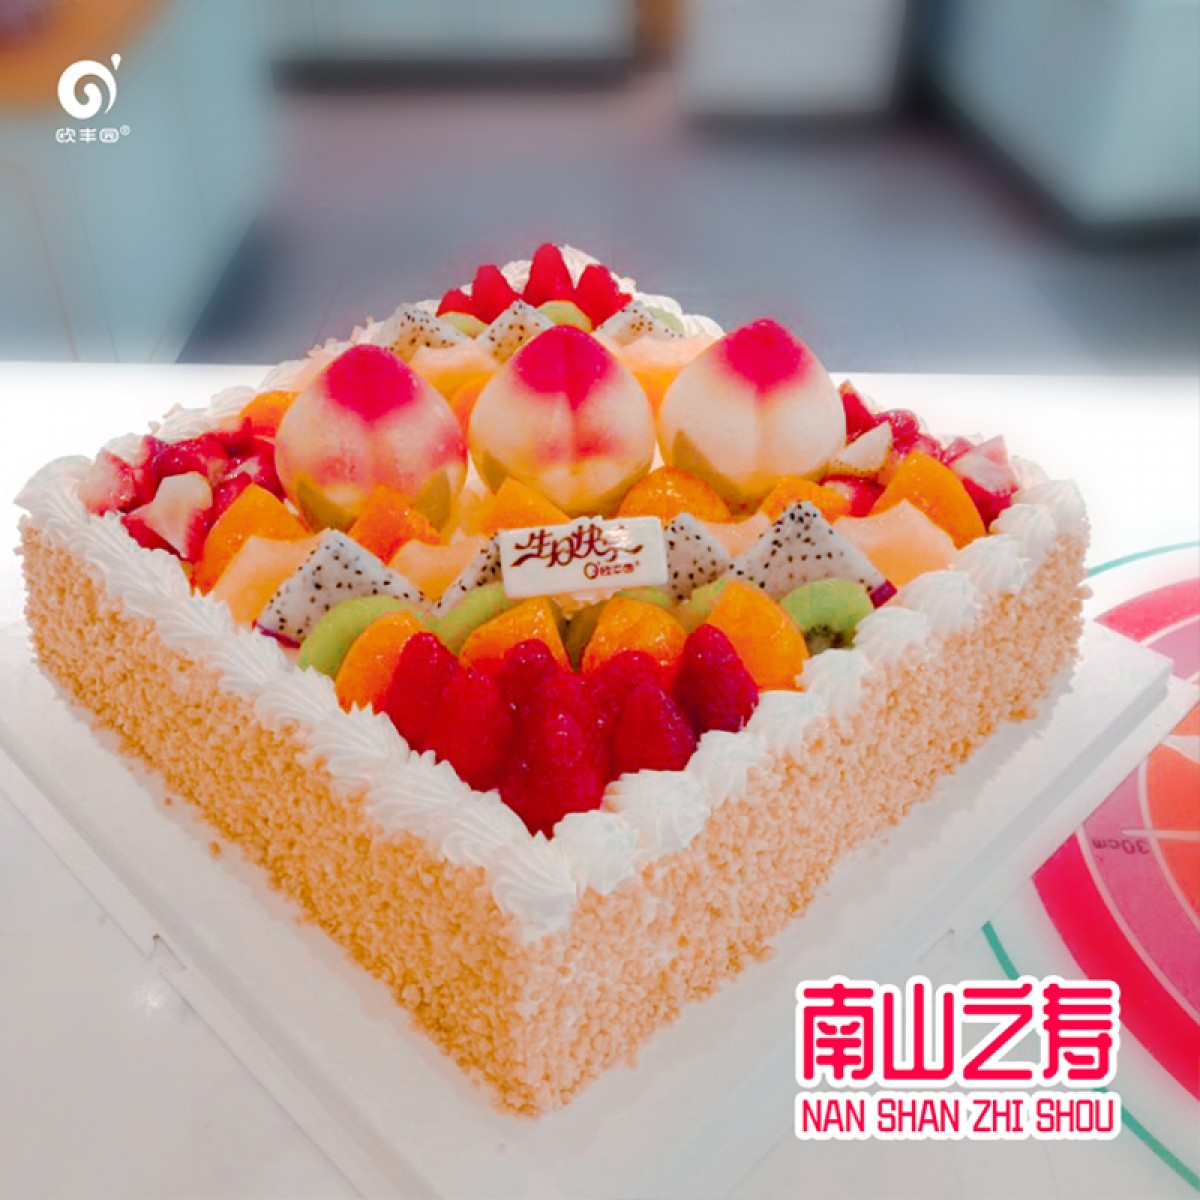 欧丰园生日蛋糕寿星系列 南山之寿蛋糕8英寸10英寸12英寸